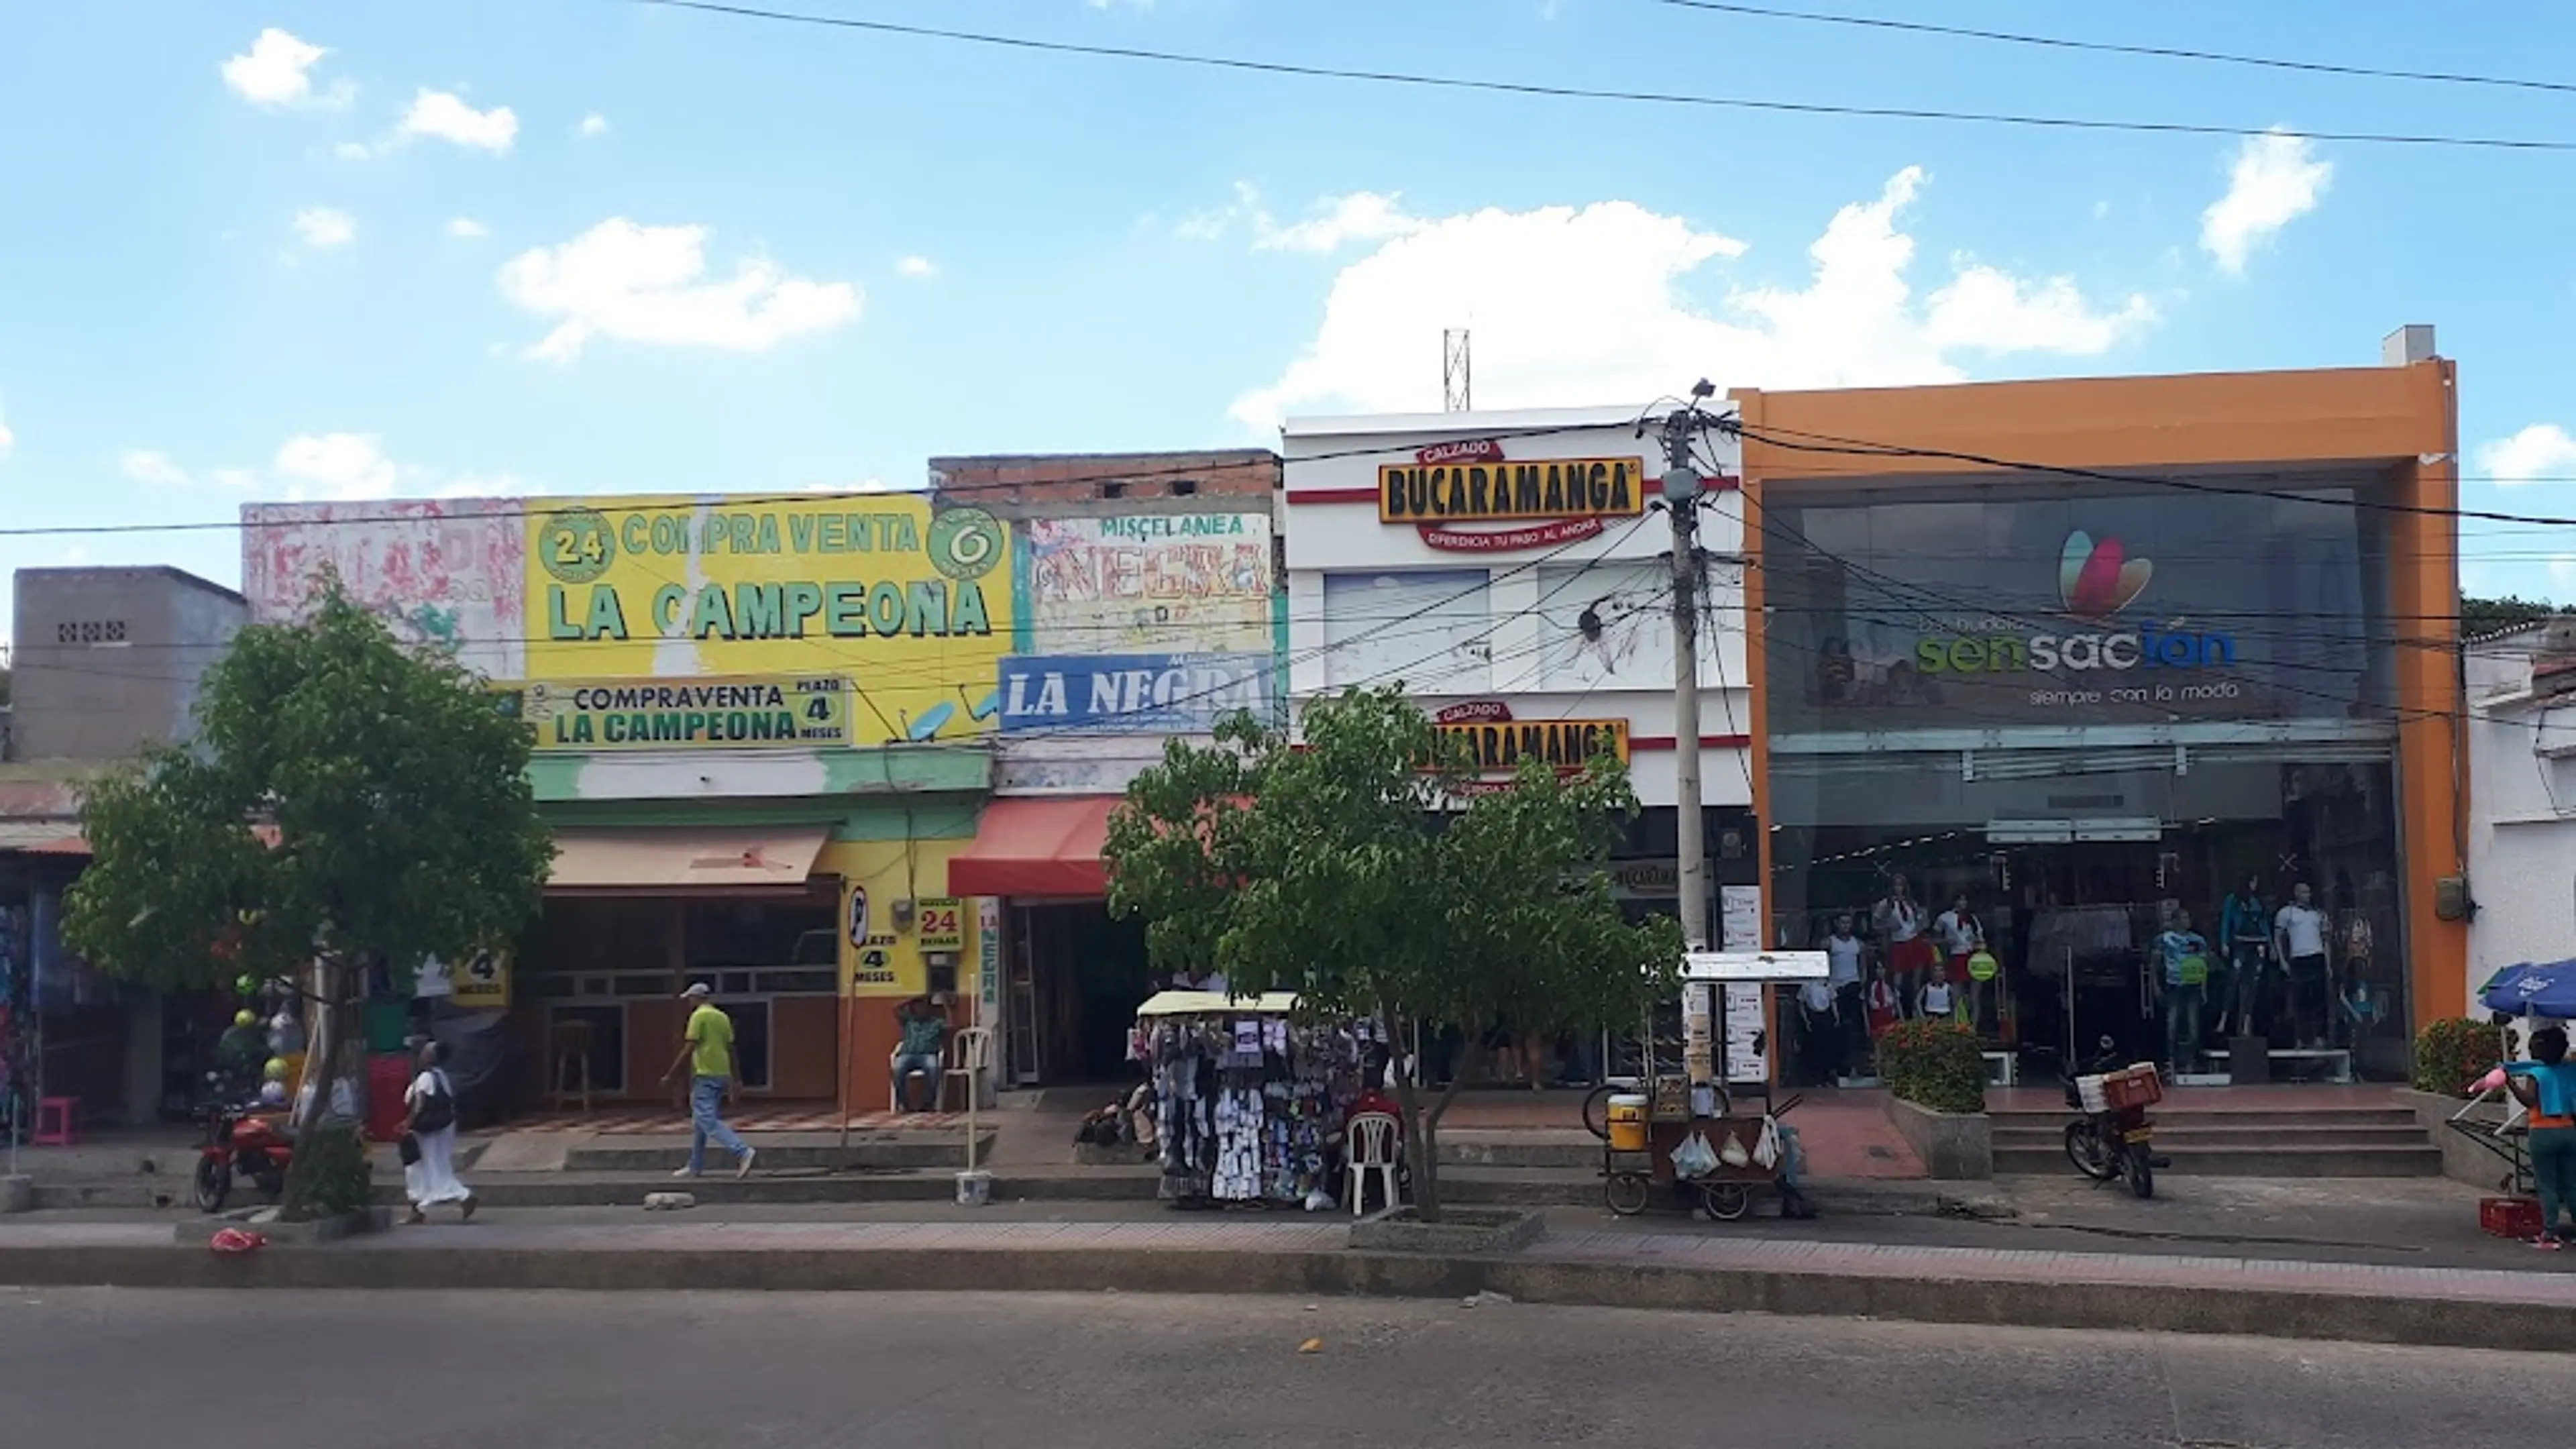 Local market in Riohacha